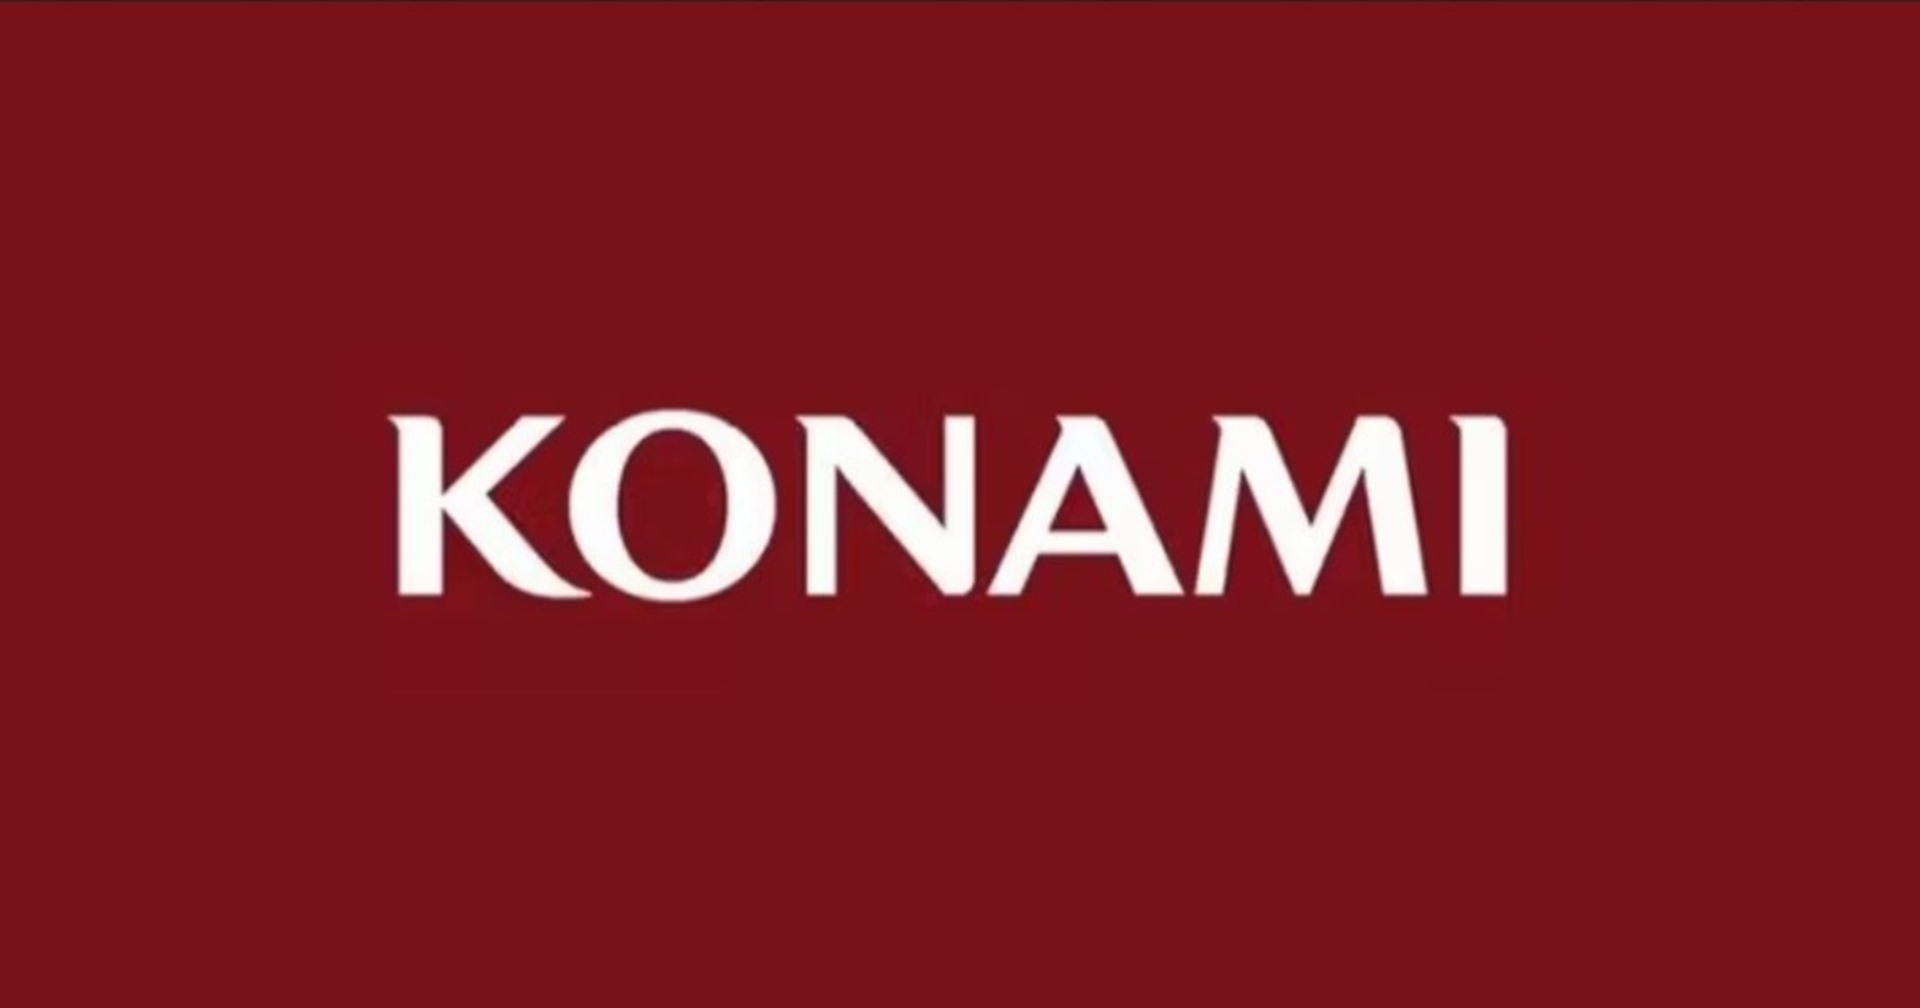 ผู้บริหารค่าย Konami ถูกอดีตพนักงานทำร้ายด้วยถังดับเพลิง